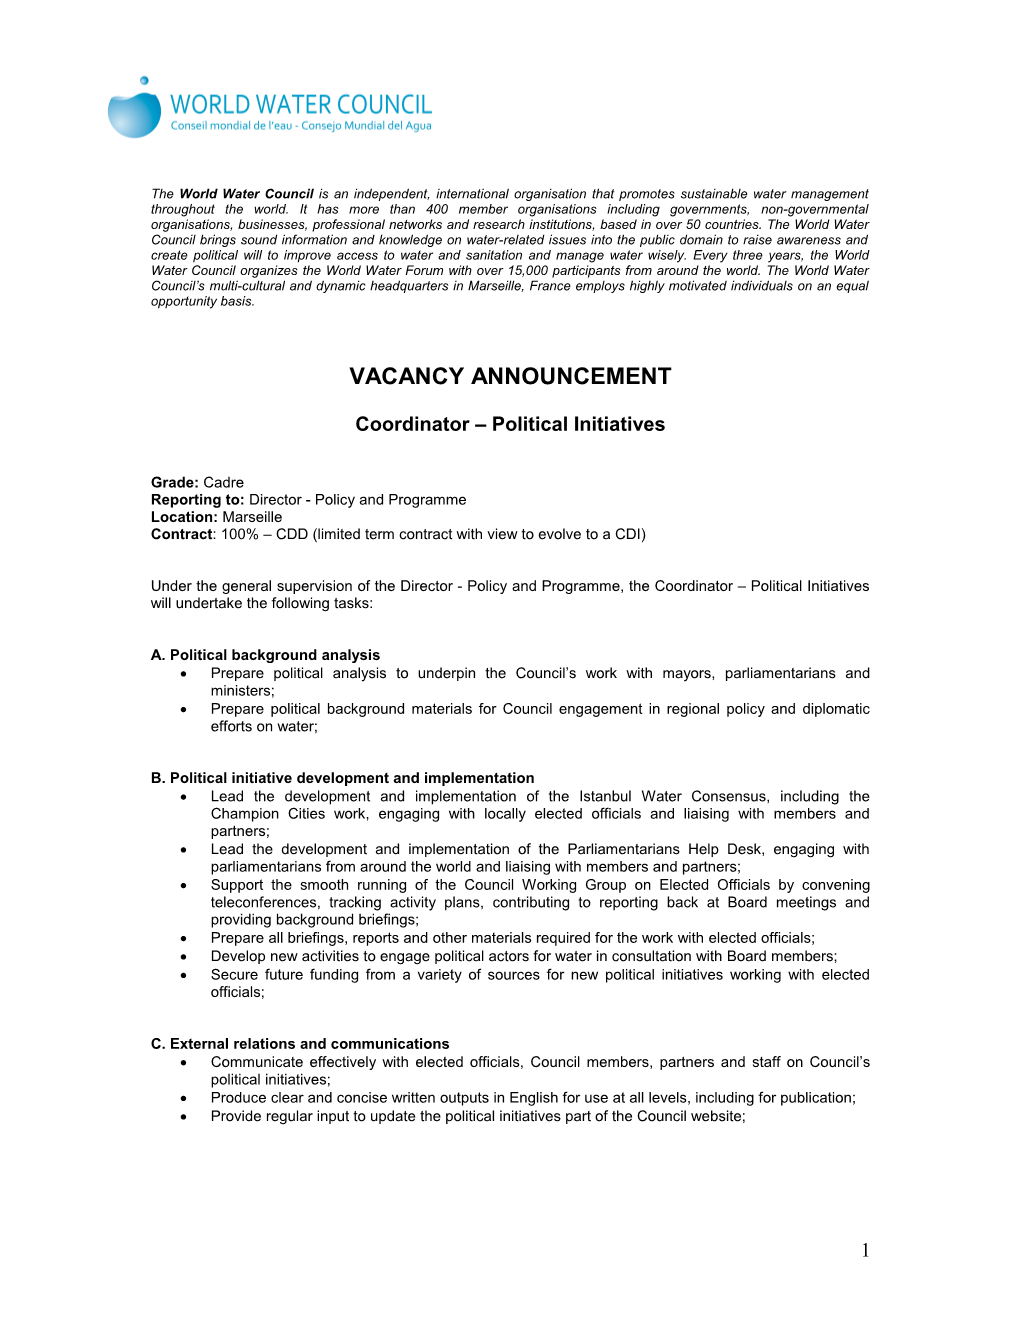 Vacancy Announcement s7